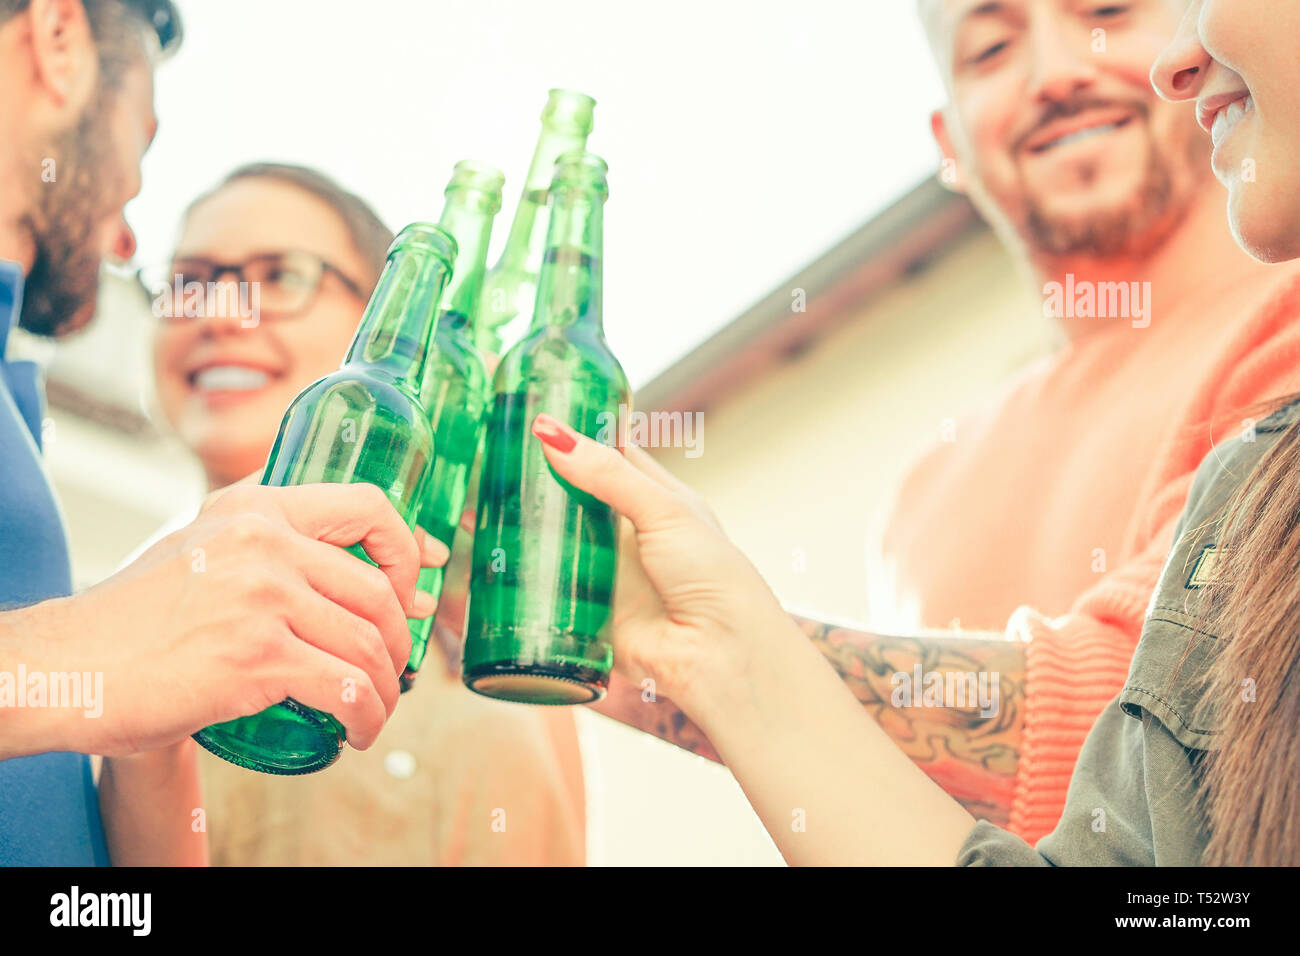 Gerne Freunde toasten Bier im Freien - Junge Leute Spaß jubeln und das Trinken von Alkohol auf der Dachterrasse - Freundschaft, Jugend, Lifestyle Konzept Stockfoto